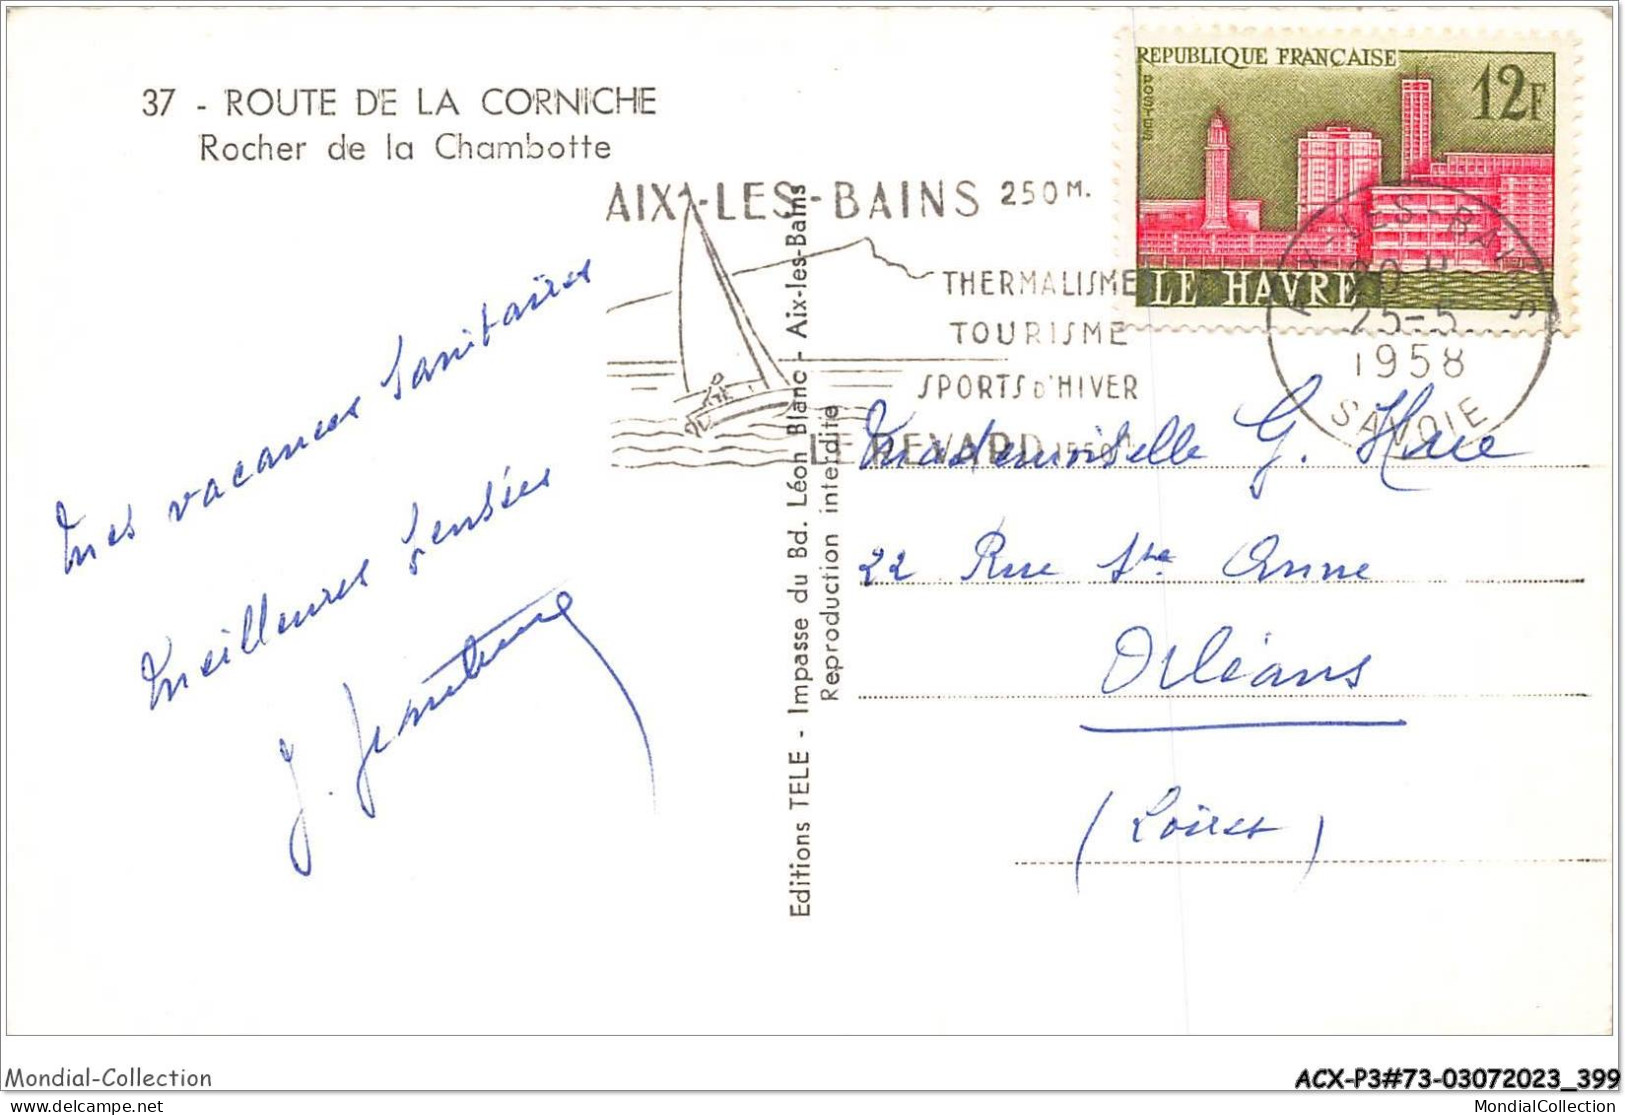 ACXP3-73-0201 - AIX-LES-BAINS - Route De La Corniche - Rocher De La Chambotte - Aix Les Bains